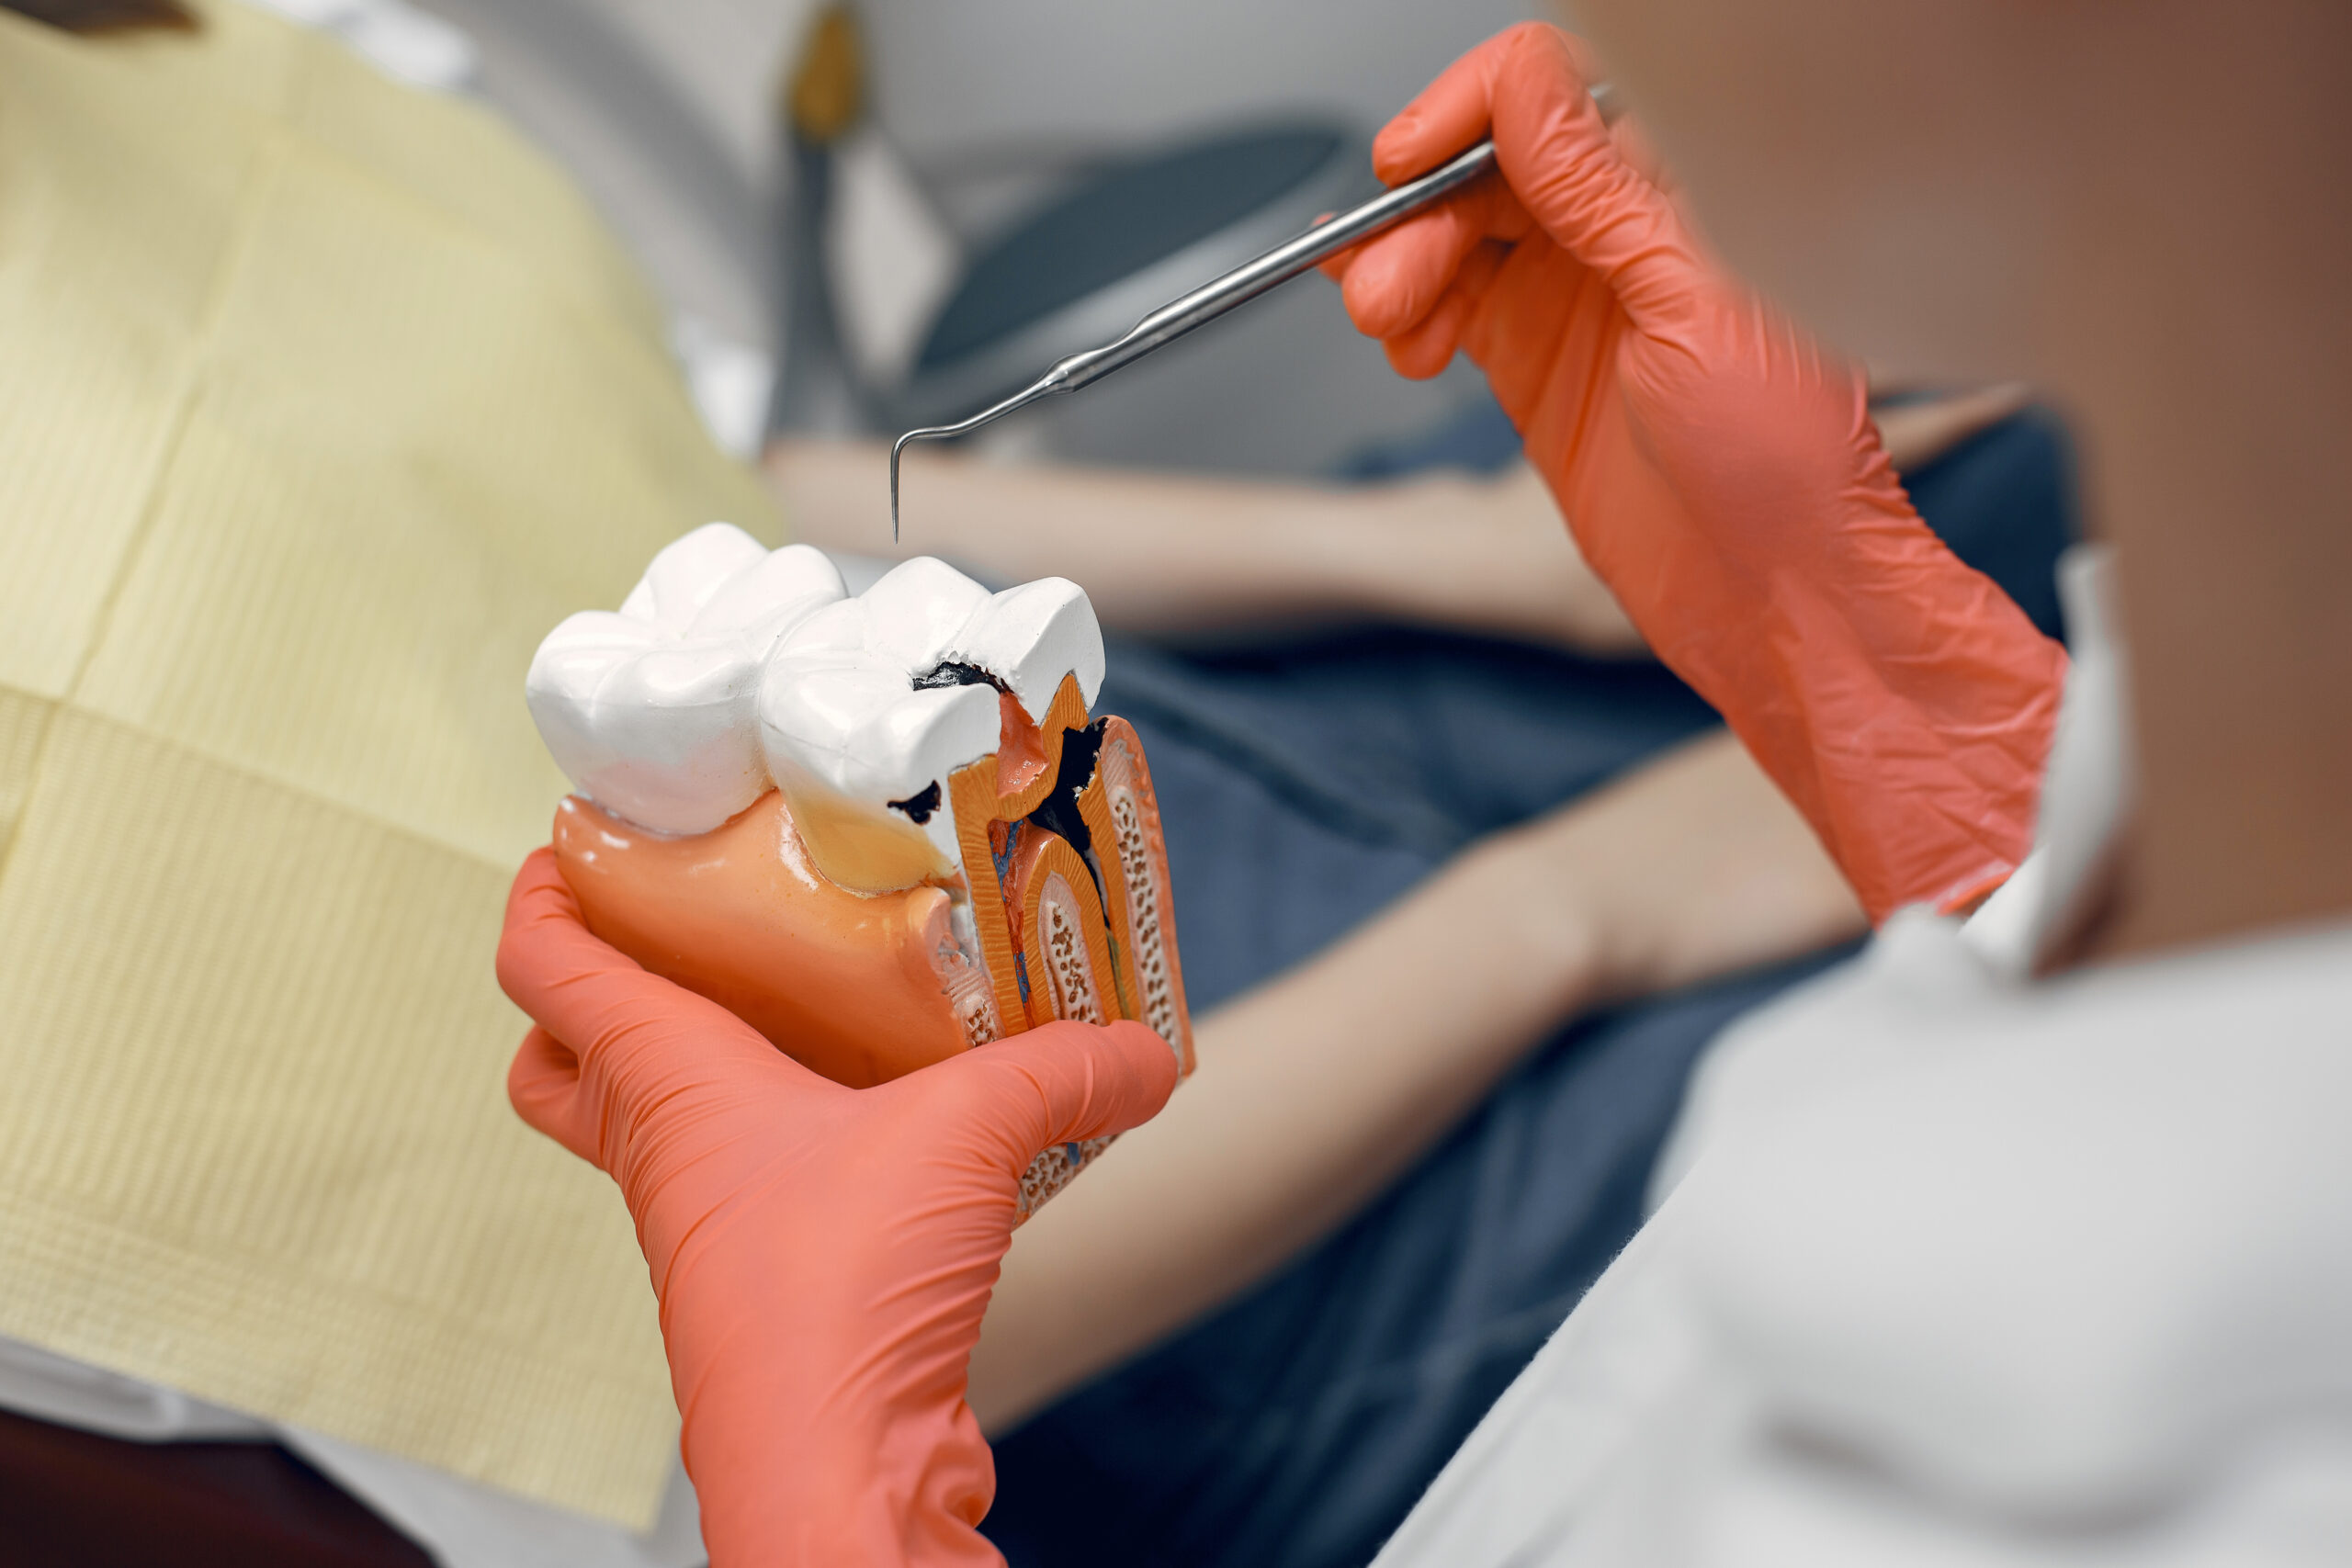 model-zeba-u-dentysty-lekarz-pokazuje-pacjentowi-zab-odbior-w-gabinecie-stomatologicznym-scaled.jpg